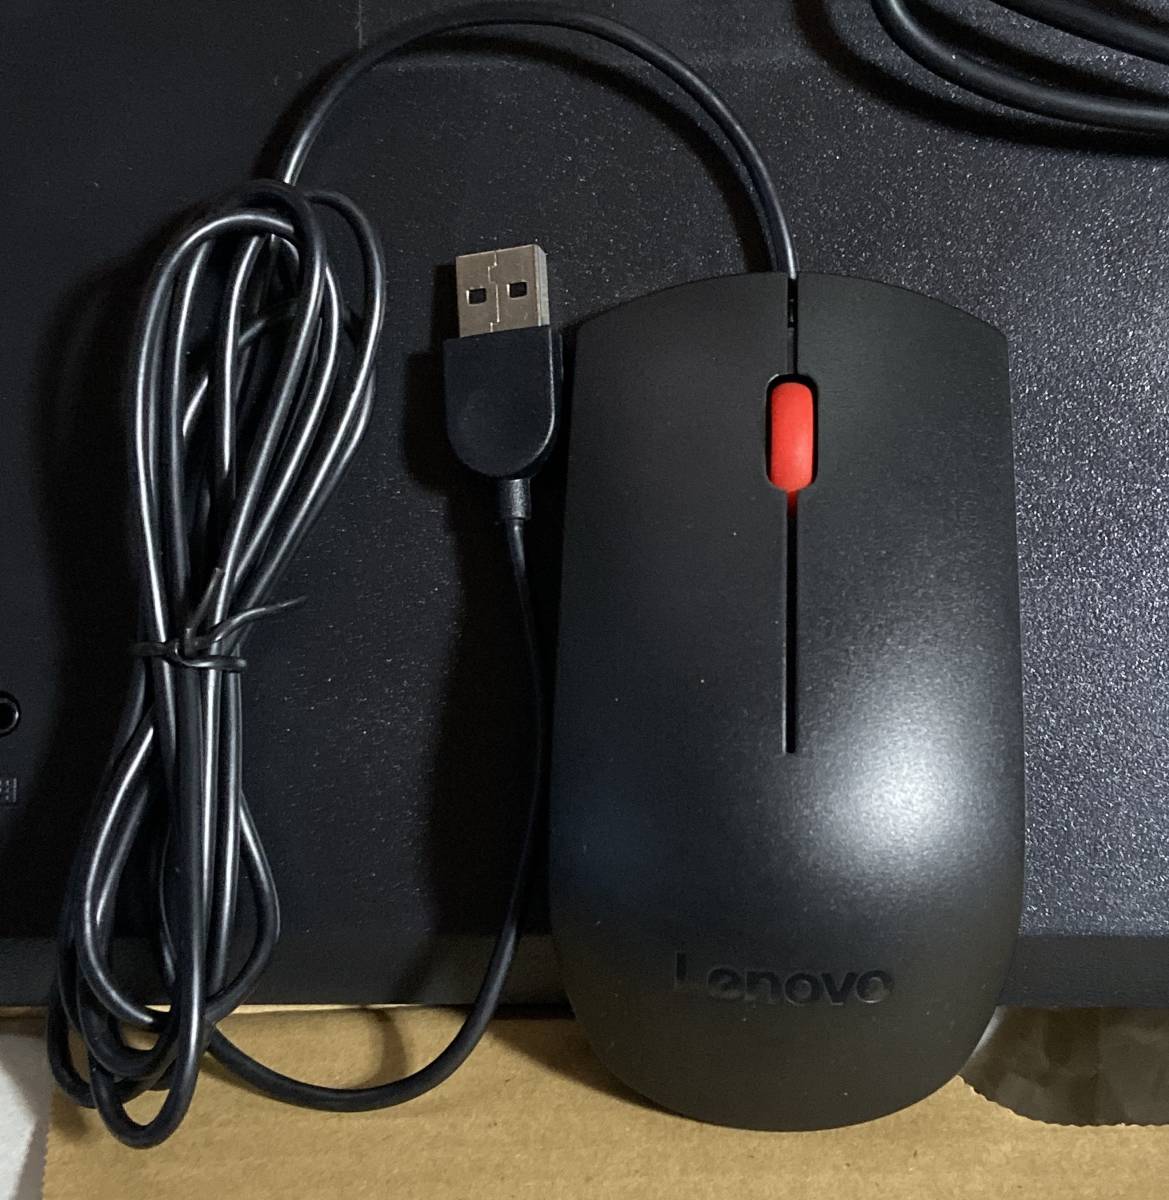 【中古】Lenovo プリファード・プロ II USBキーボード SK-8827 + USB エッセンシャルマウス SM-8823 / エアディフレクター_画像6